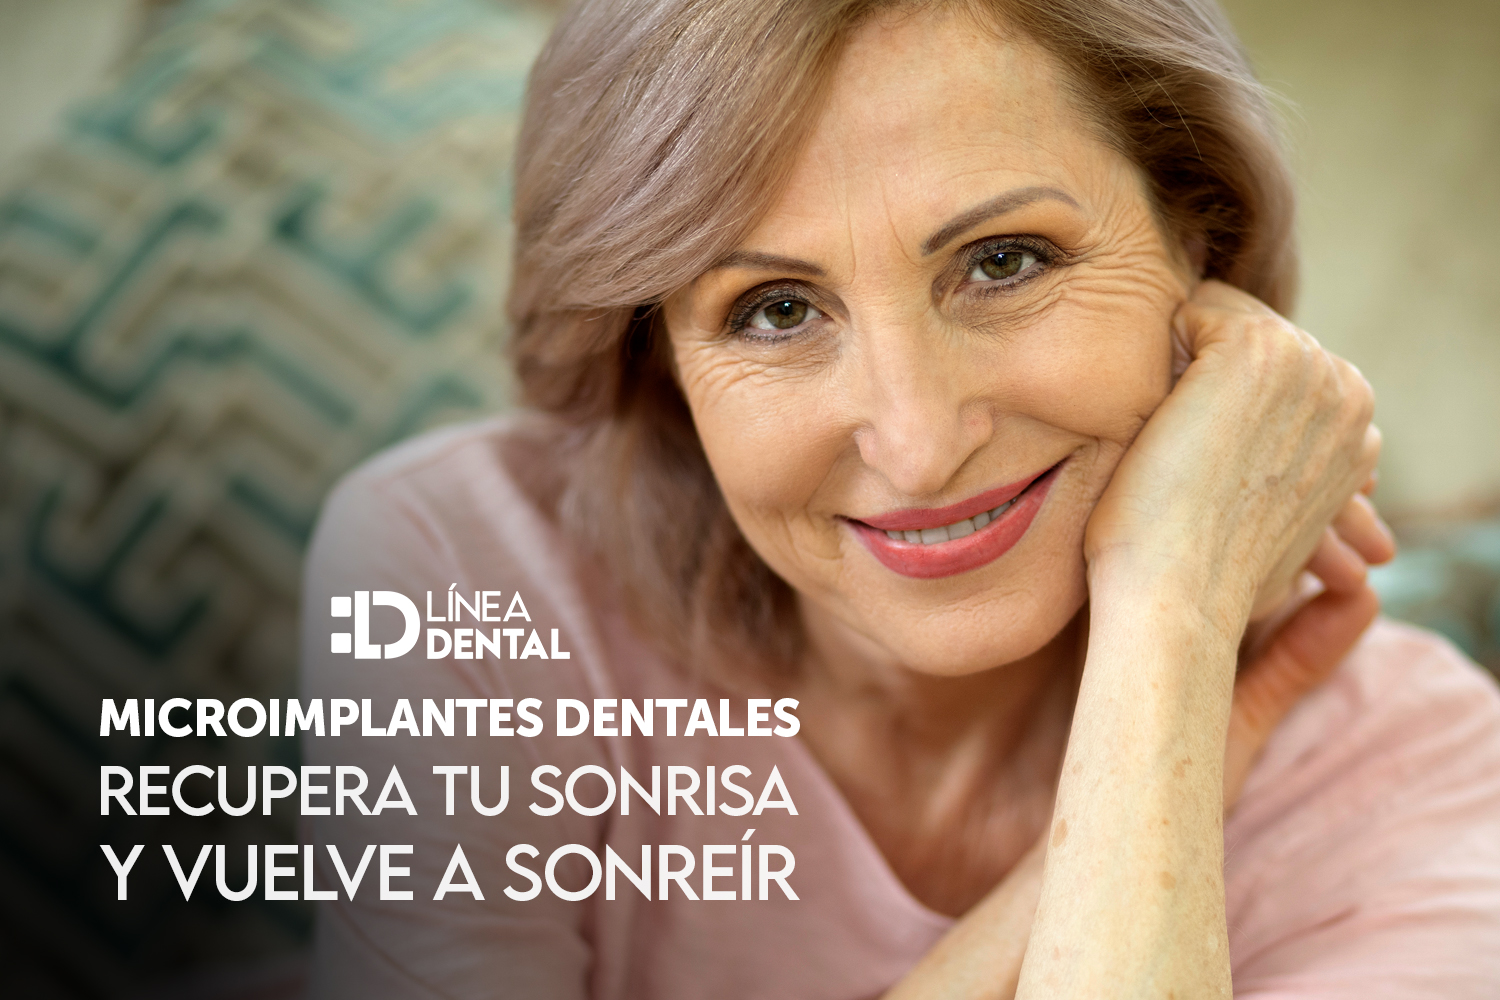 microimplantes-dentales-implante-dental-dentista-odontologo-linea-dental-ciudad-real-miguelturra